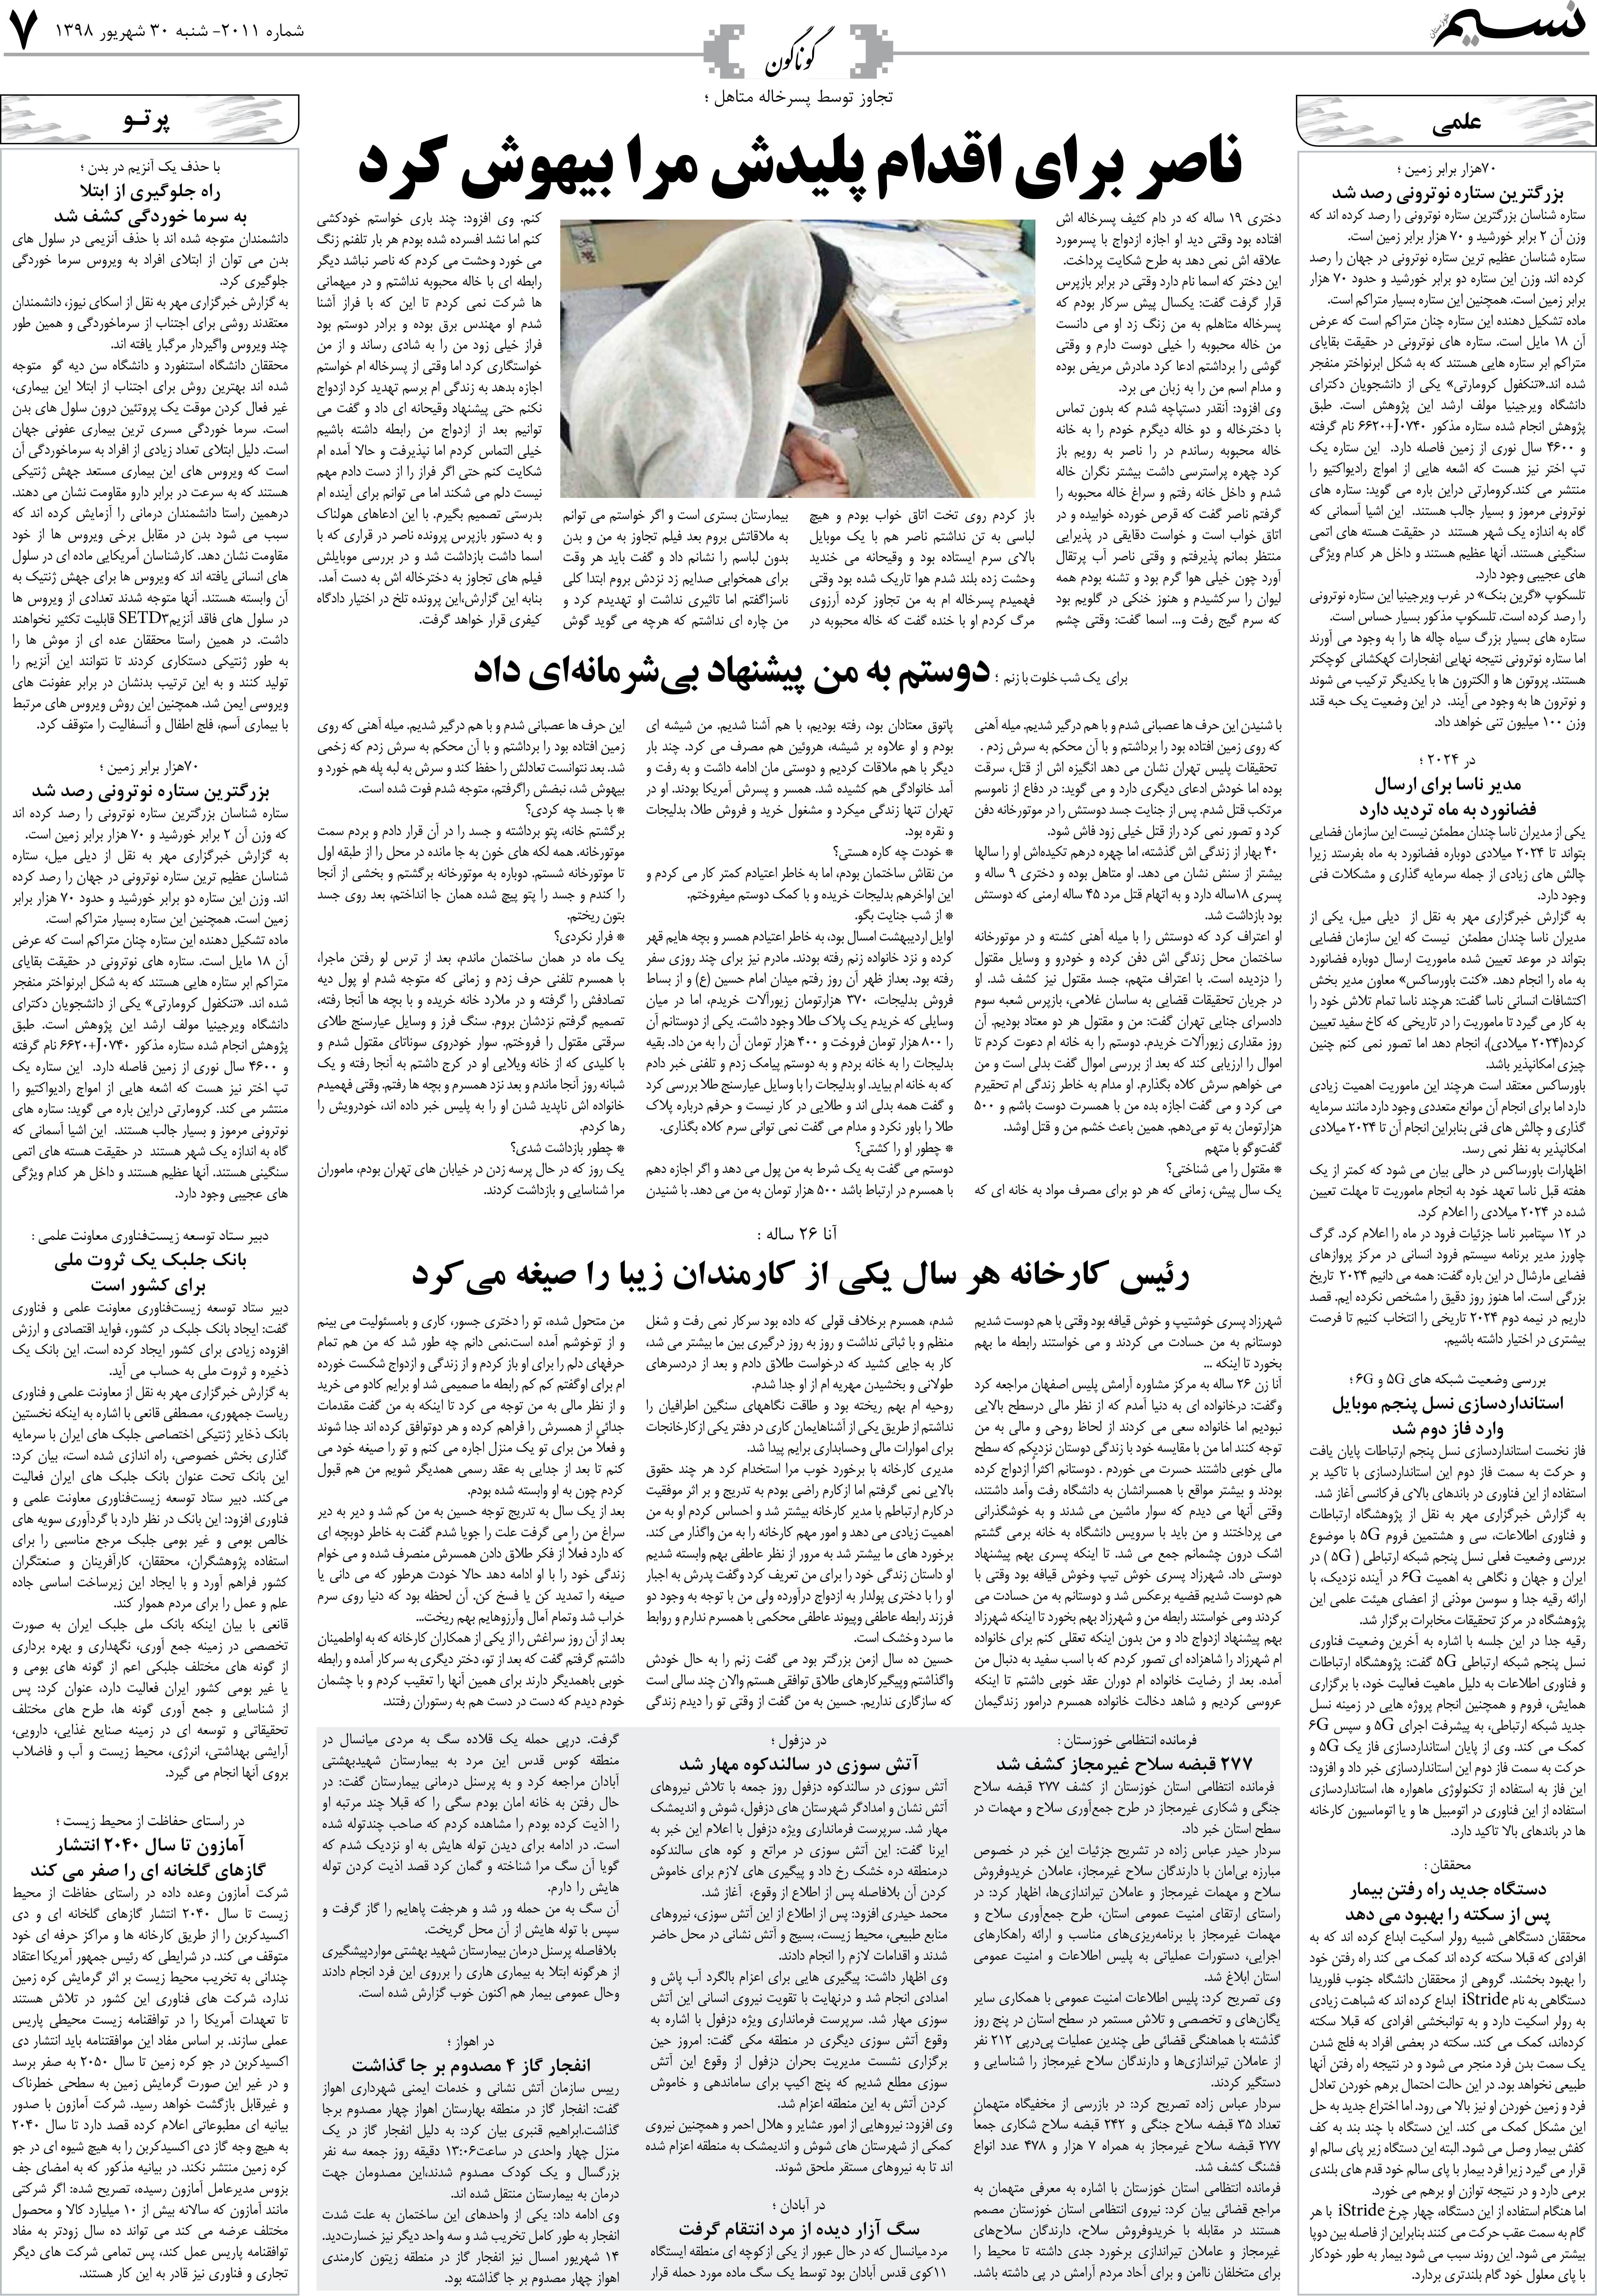 صفحه گوناگون روزنامه نسیم شماره 2011